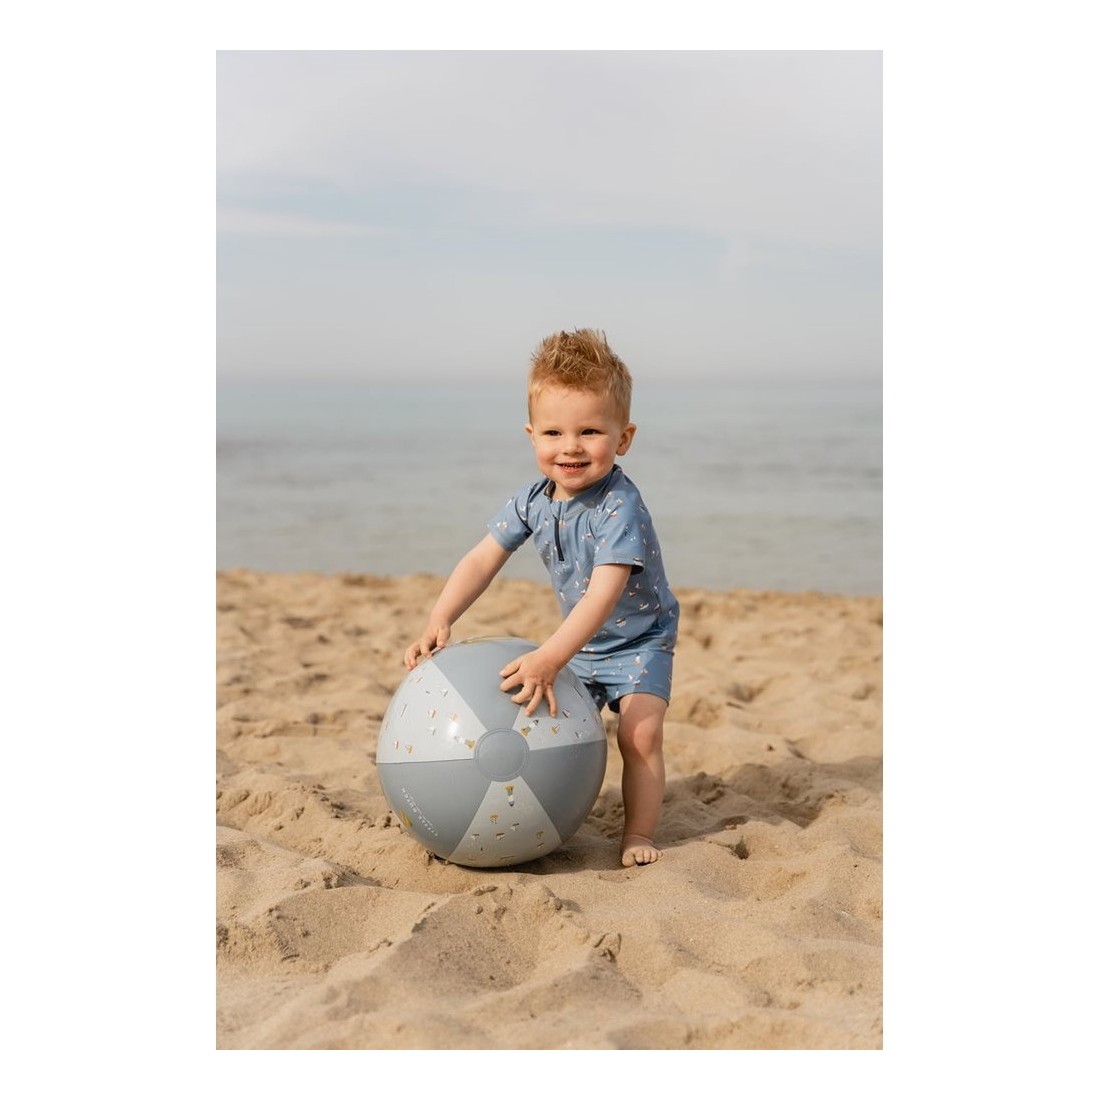 Ballon de plage Sailors Bay 35 cm - Little Dutch